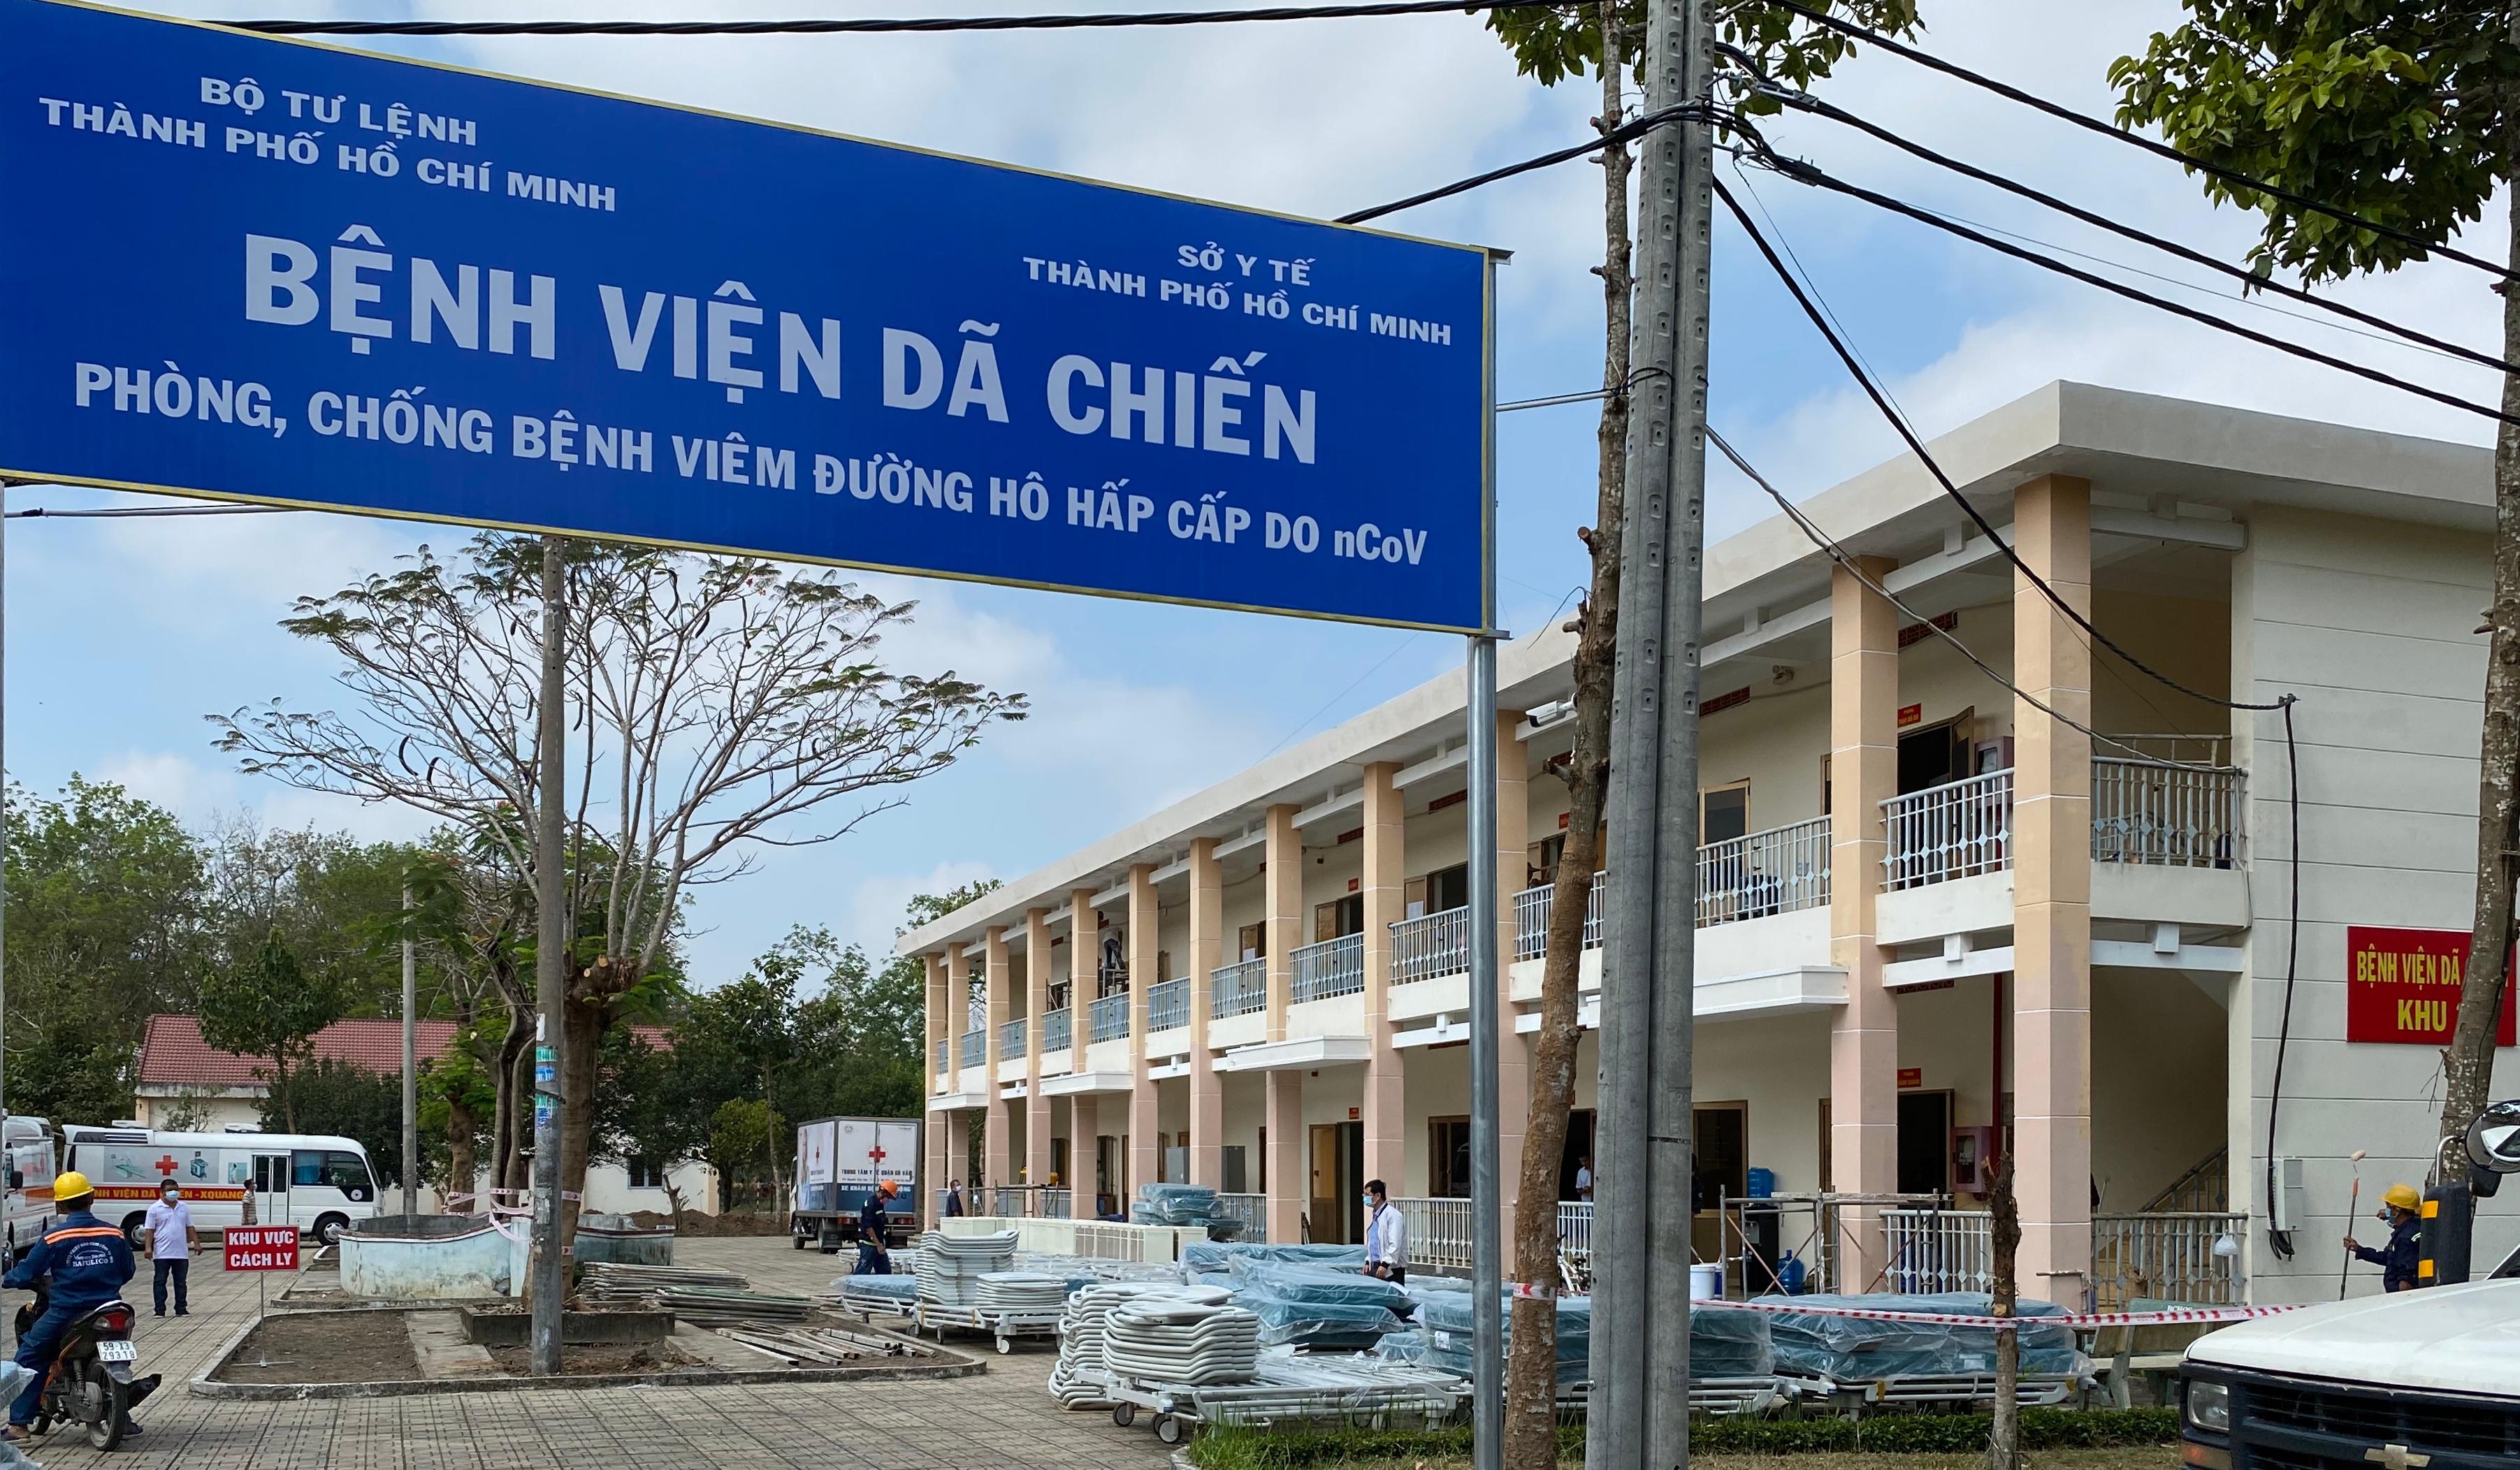 Mua Bán nhà đất gần Mua bán xe tải cũ Trần Tuyến Hồ Chí Minh